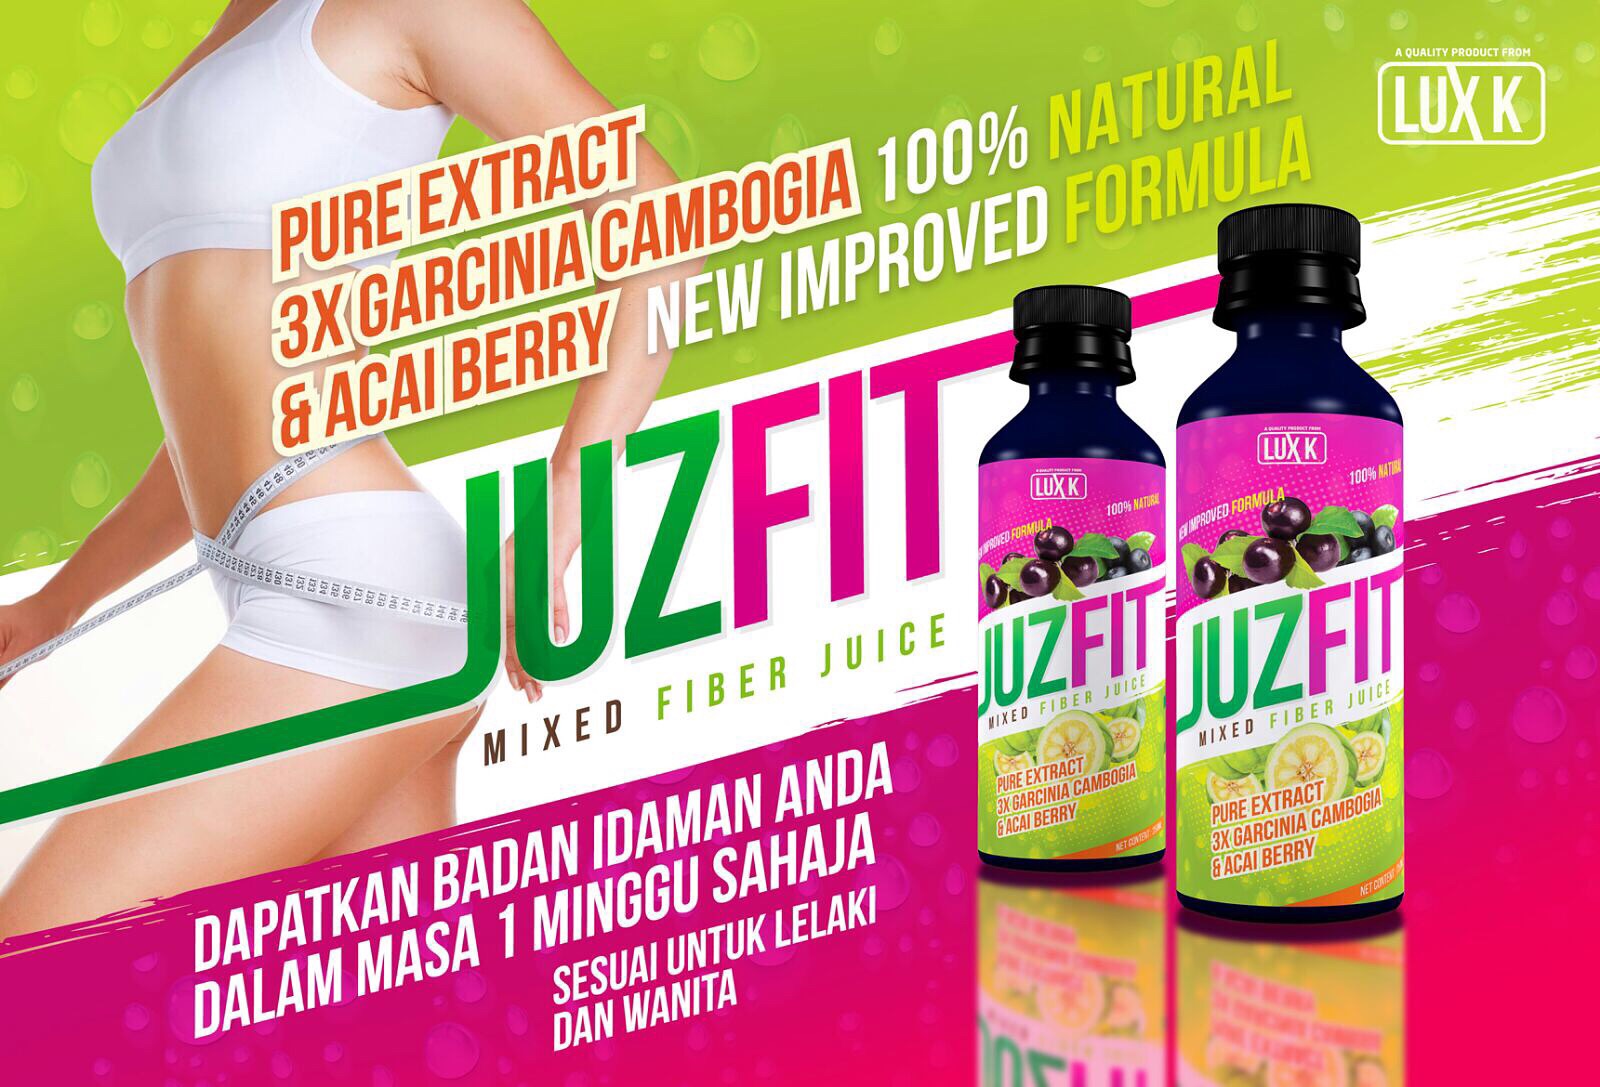 DAUS REDSCARZ: Kelebihan JUZFIT Mixed Fiber Juice